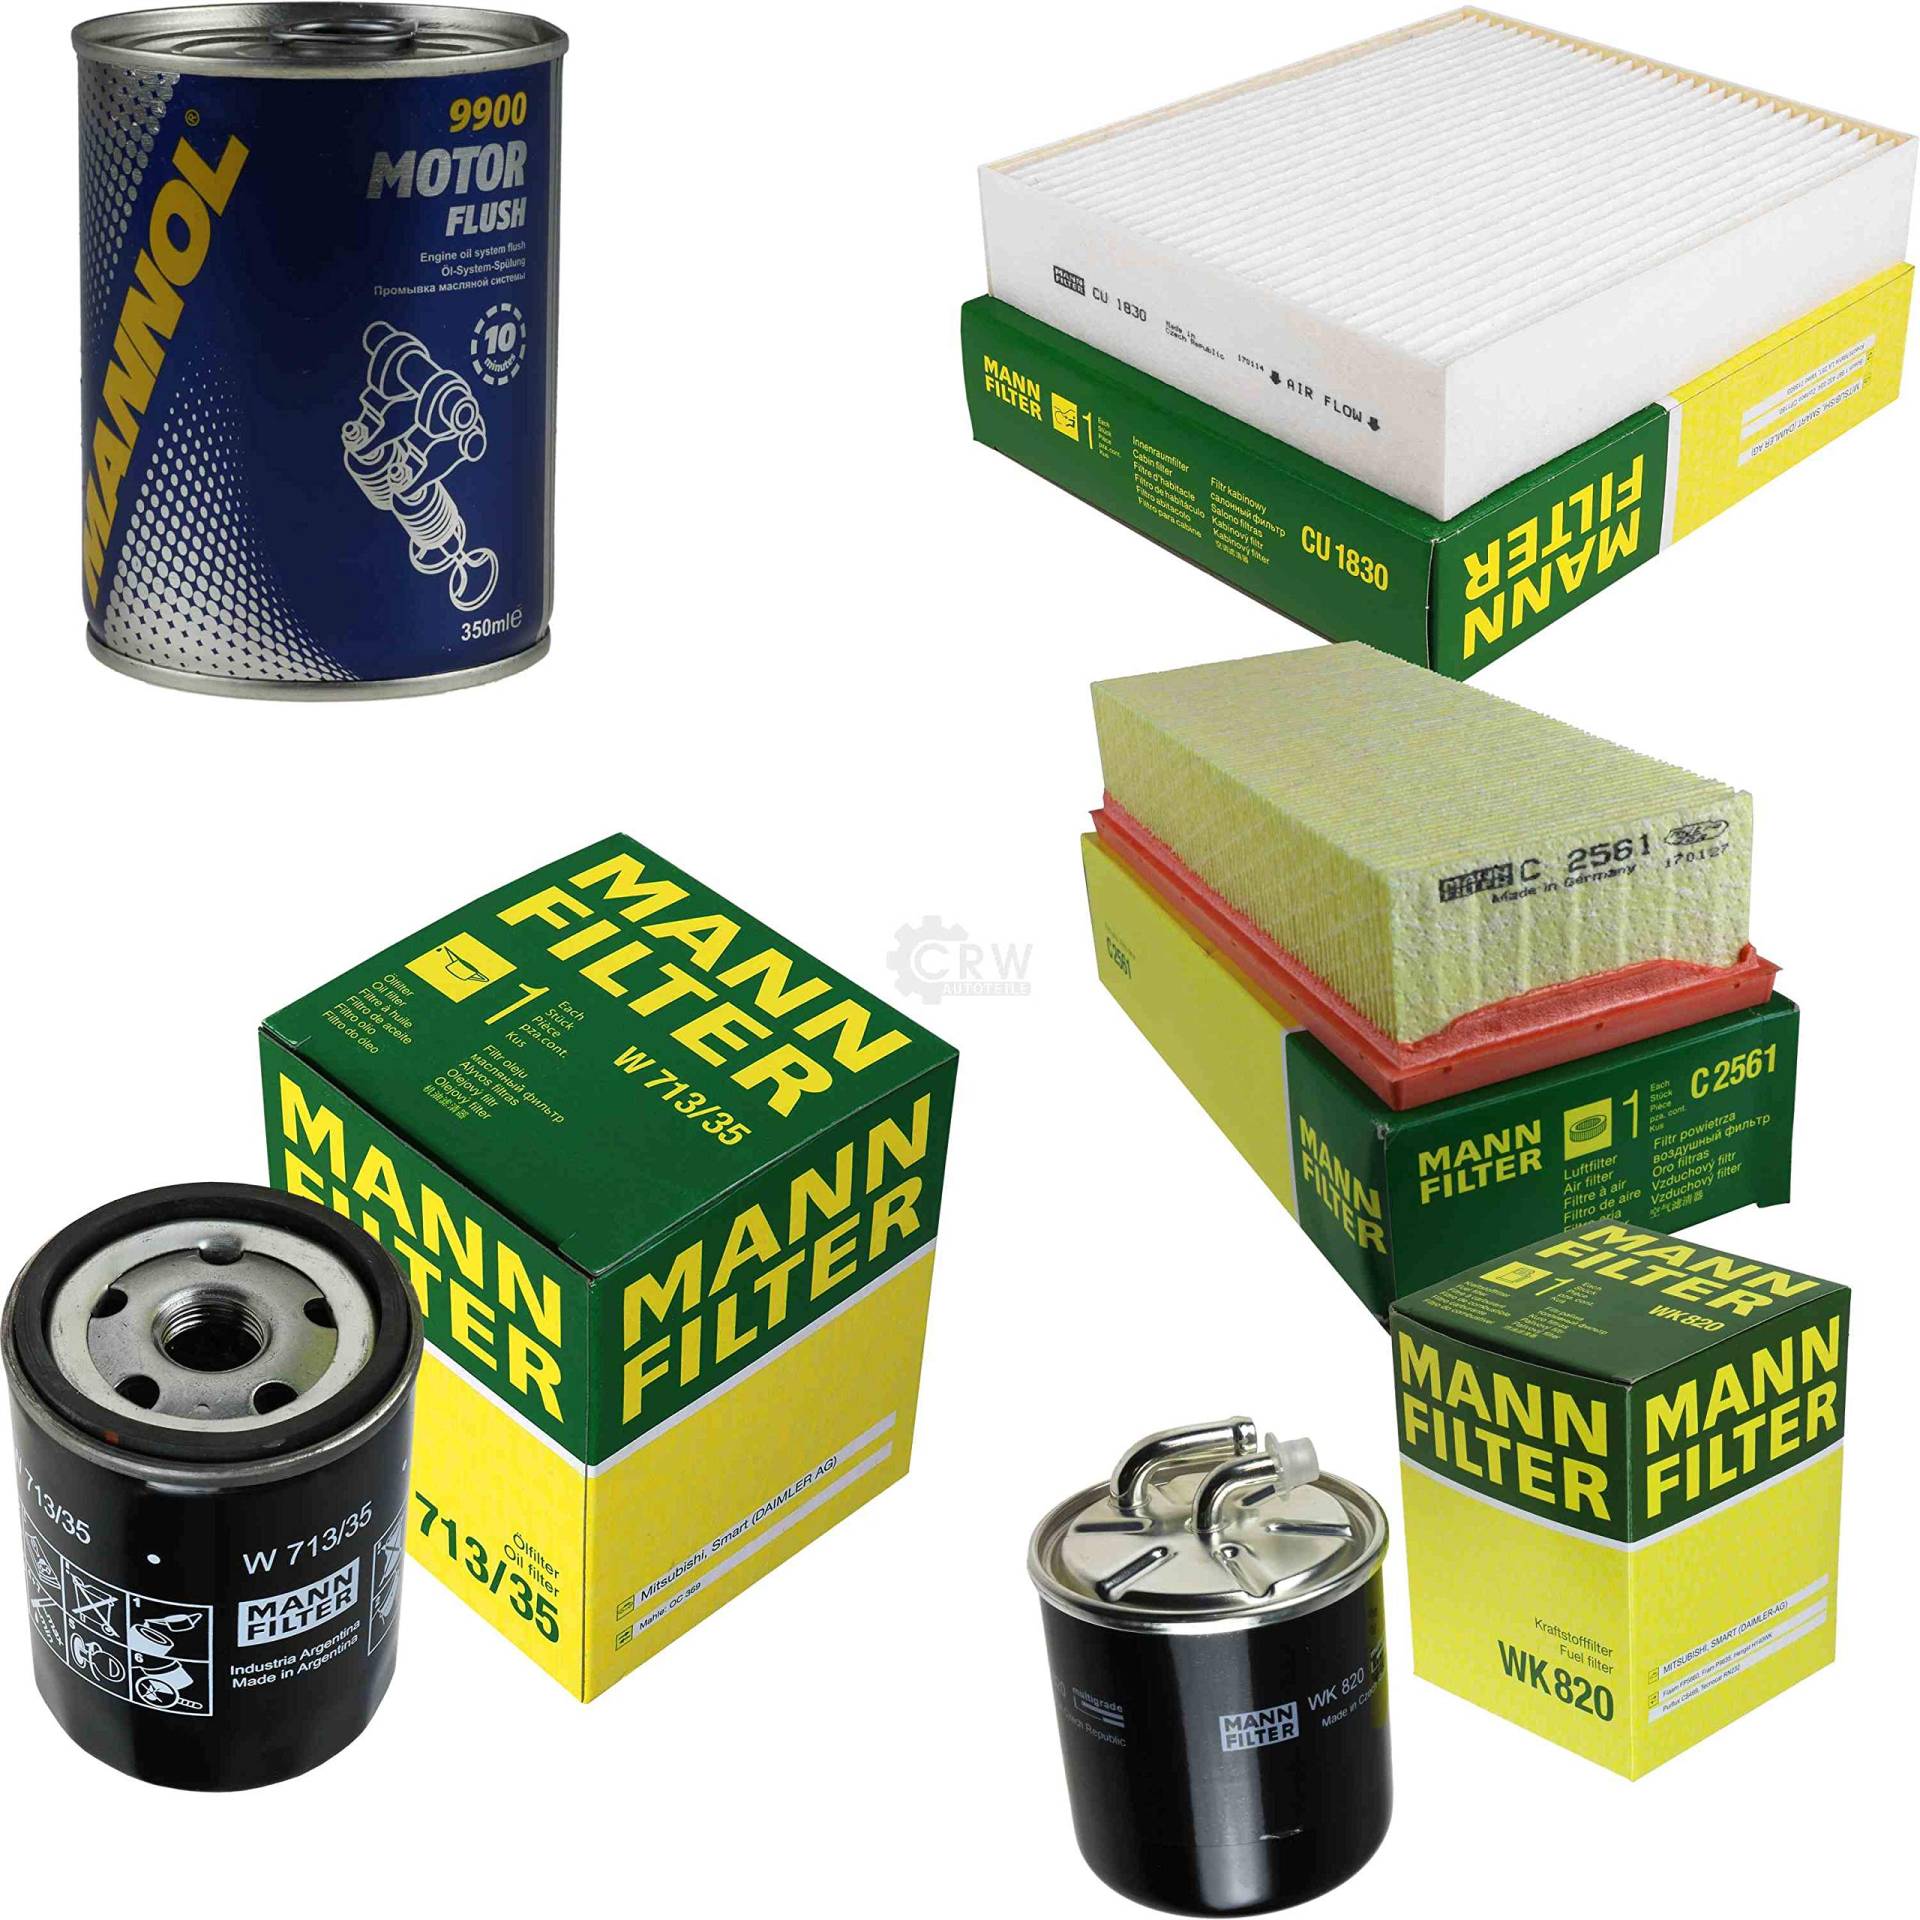 Original MANN-Filter Inspektionspaket Set SCT Motor Flush Motorspülung 11578147 von Diederichs